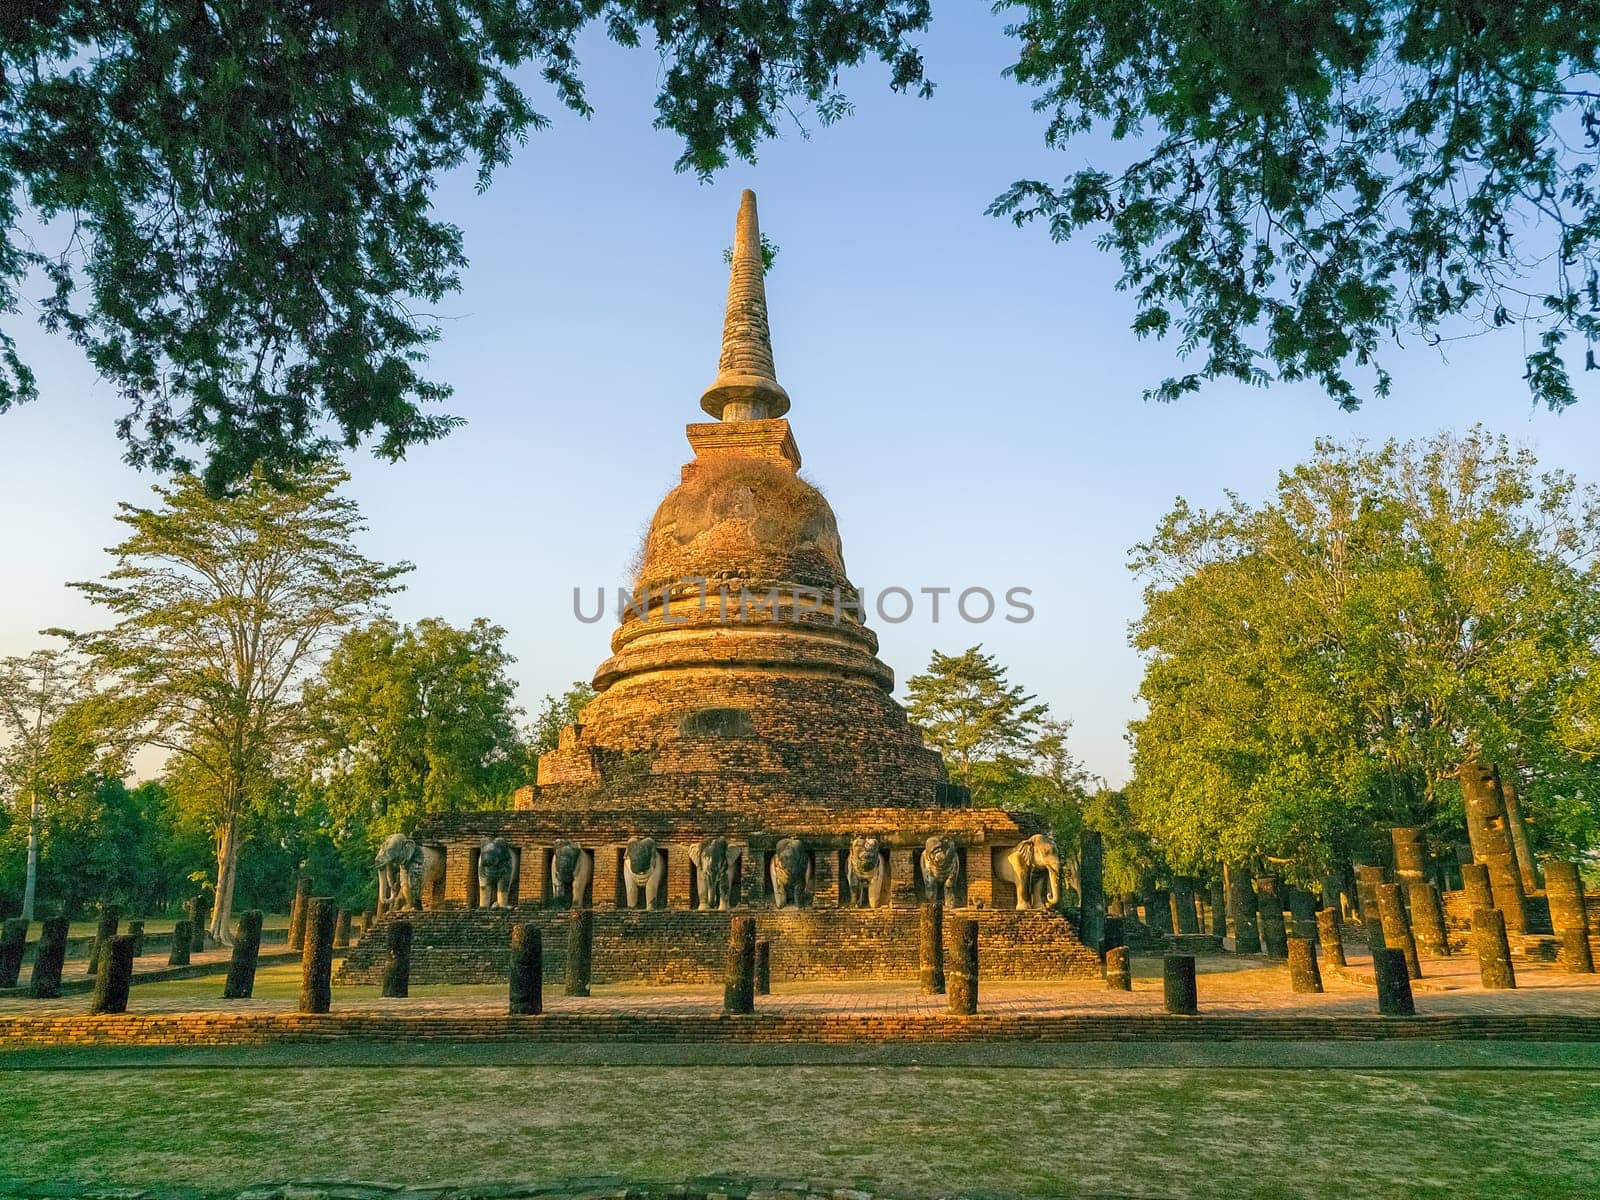 Wat Chang Lom at Sukhothai historic park, Thailand by Elenaphotos21